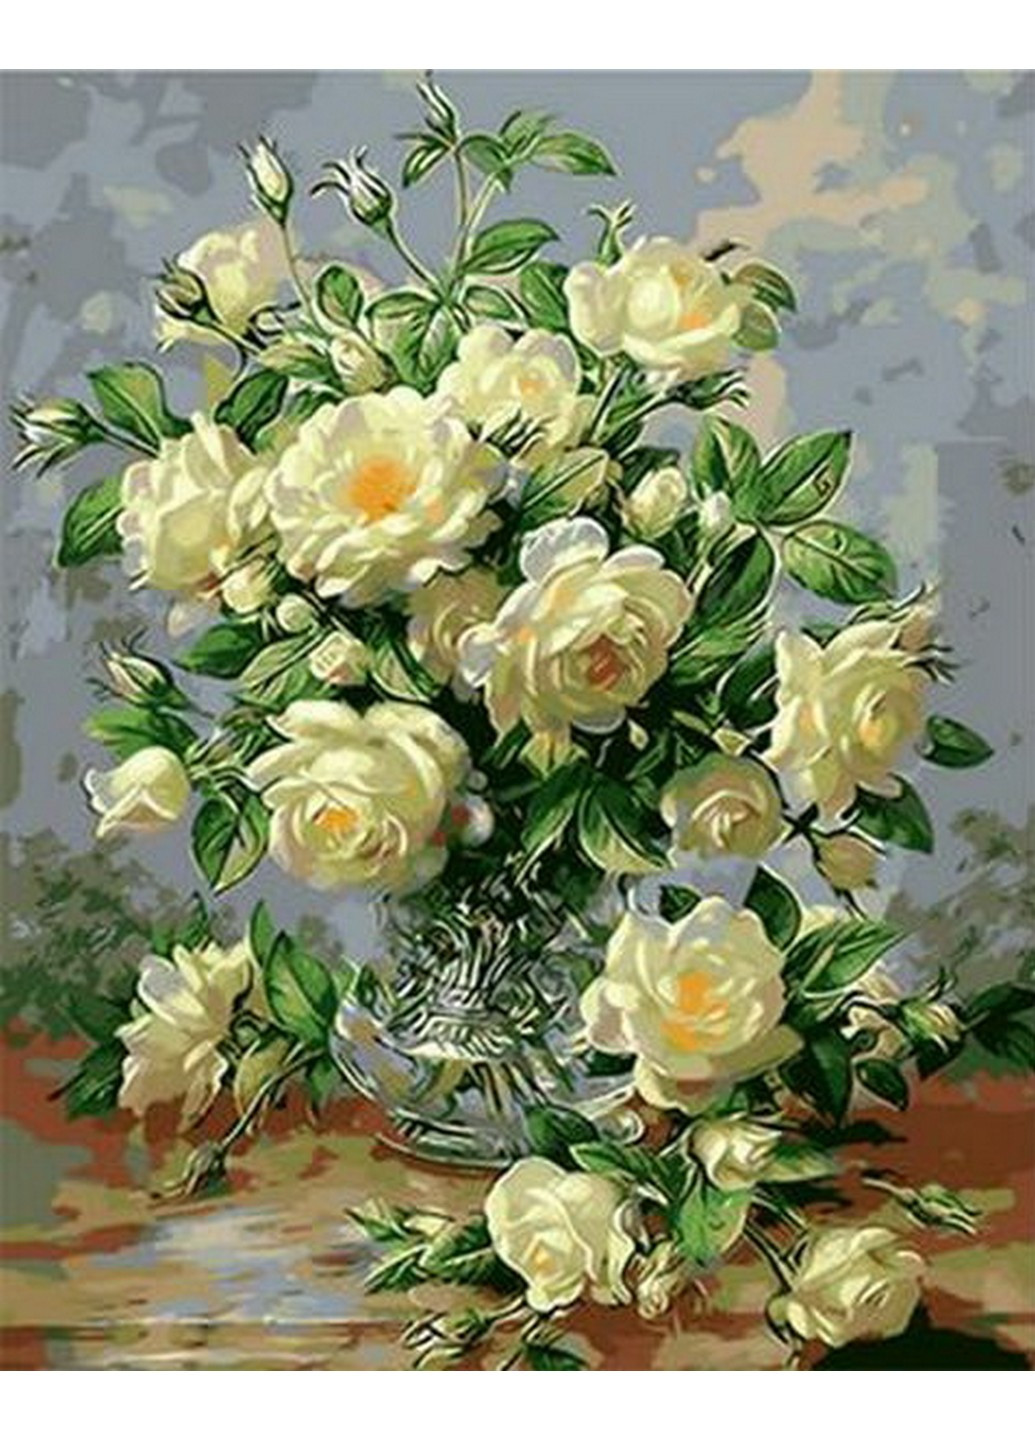 Картина по номерам Букет белых роз худ. Уильямс Альберт, 40*50 см Mariposa комбинированные